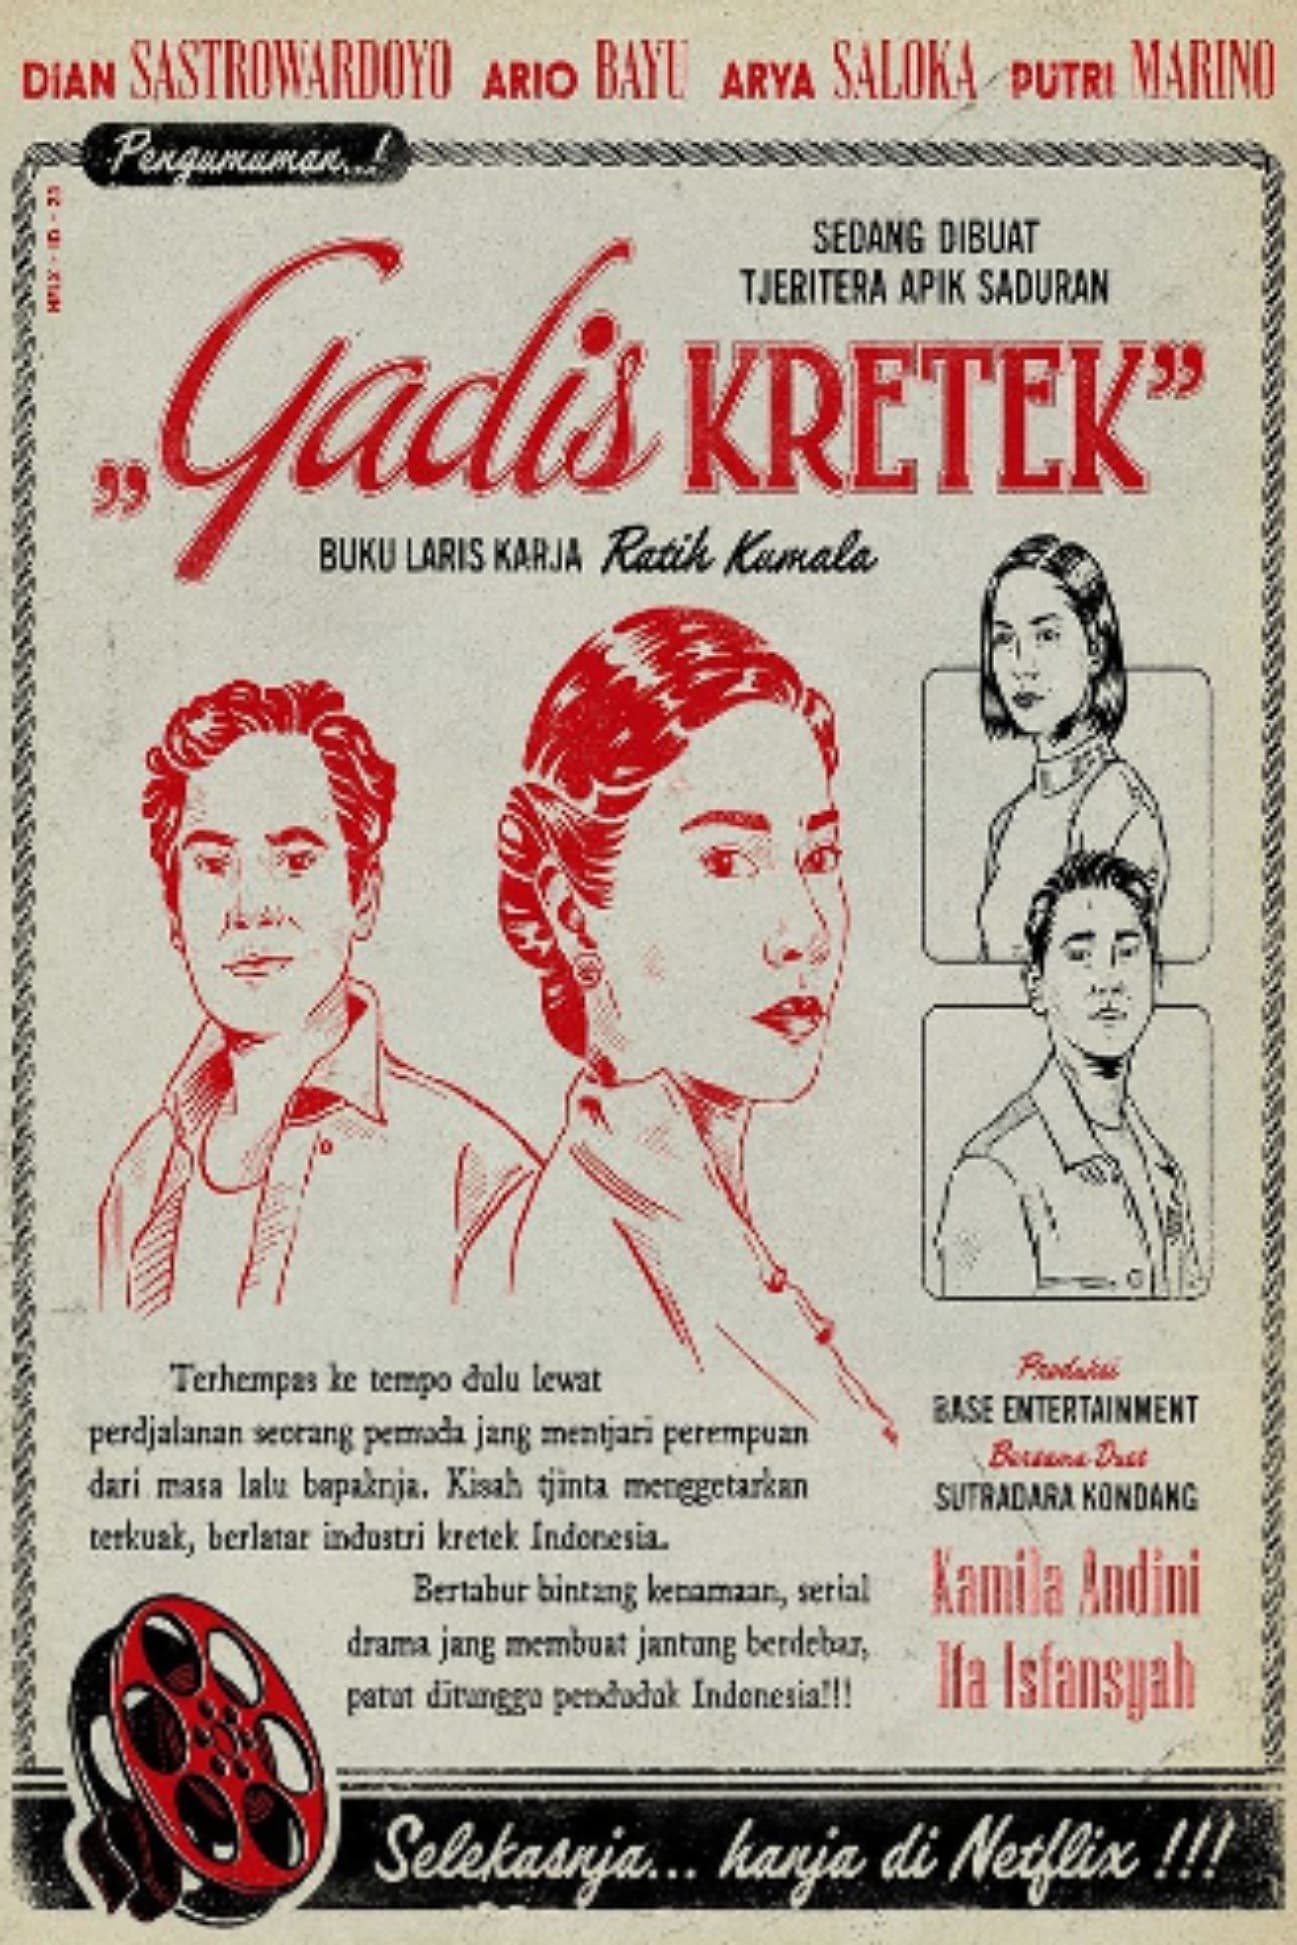 TV ratings for Cigarette Girl (Gadis Kretek) in Germany. Netflix TV series